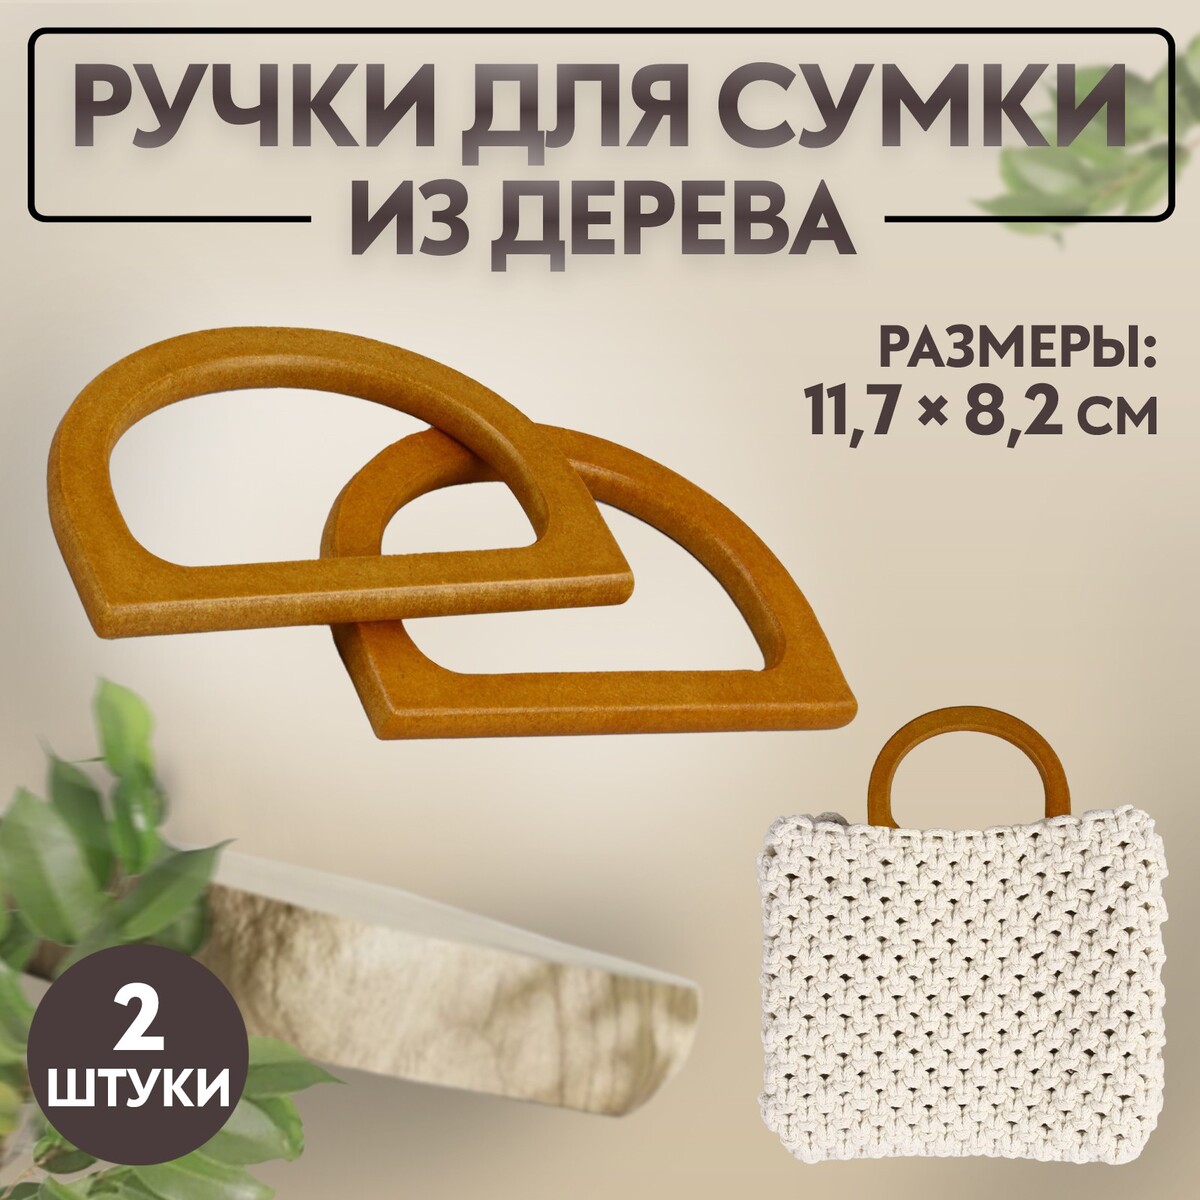 Ручки для сумки деревянные, 11,7 × 8,2 см, 2 шт, цвет коричневый ручки для сумки деревянные 12 × 8 5 см 2 шт темно коричневый